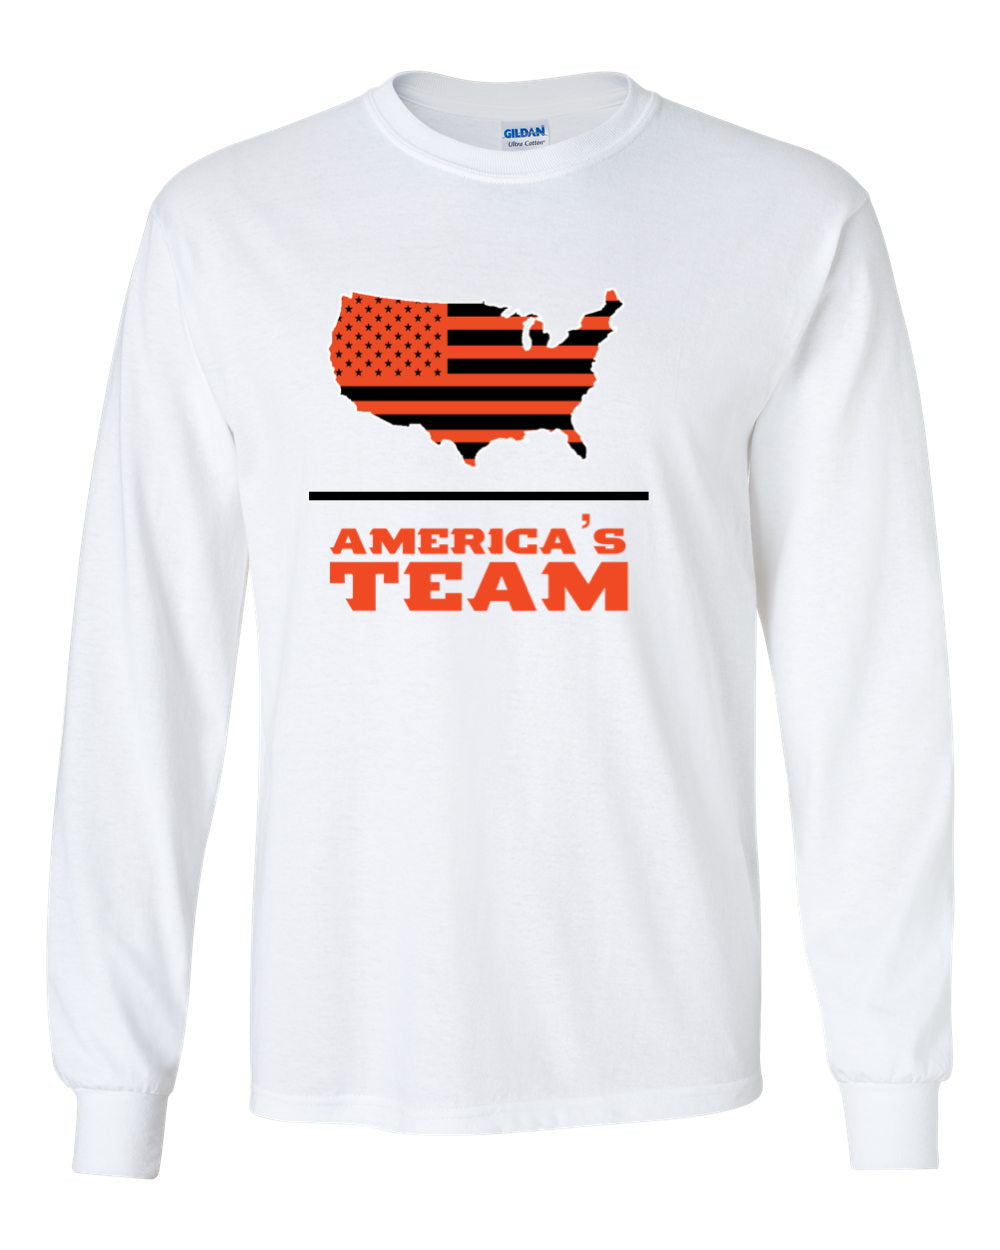 America’s Team Long Sleeve T-Shirt (White)